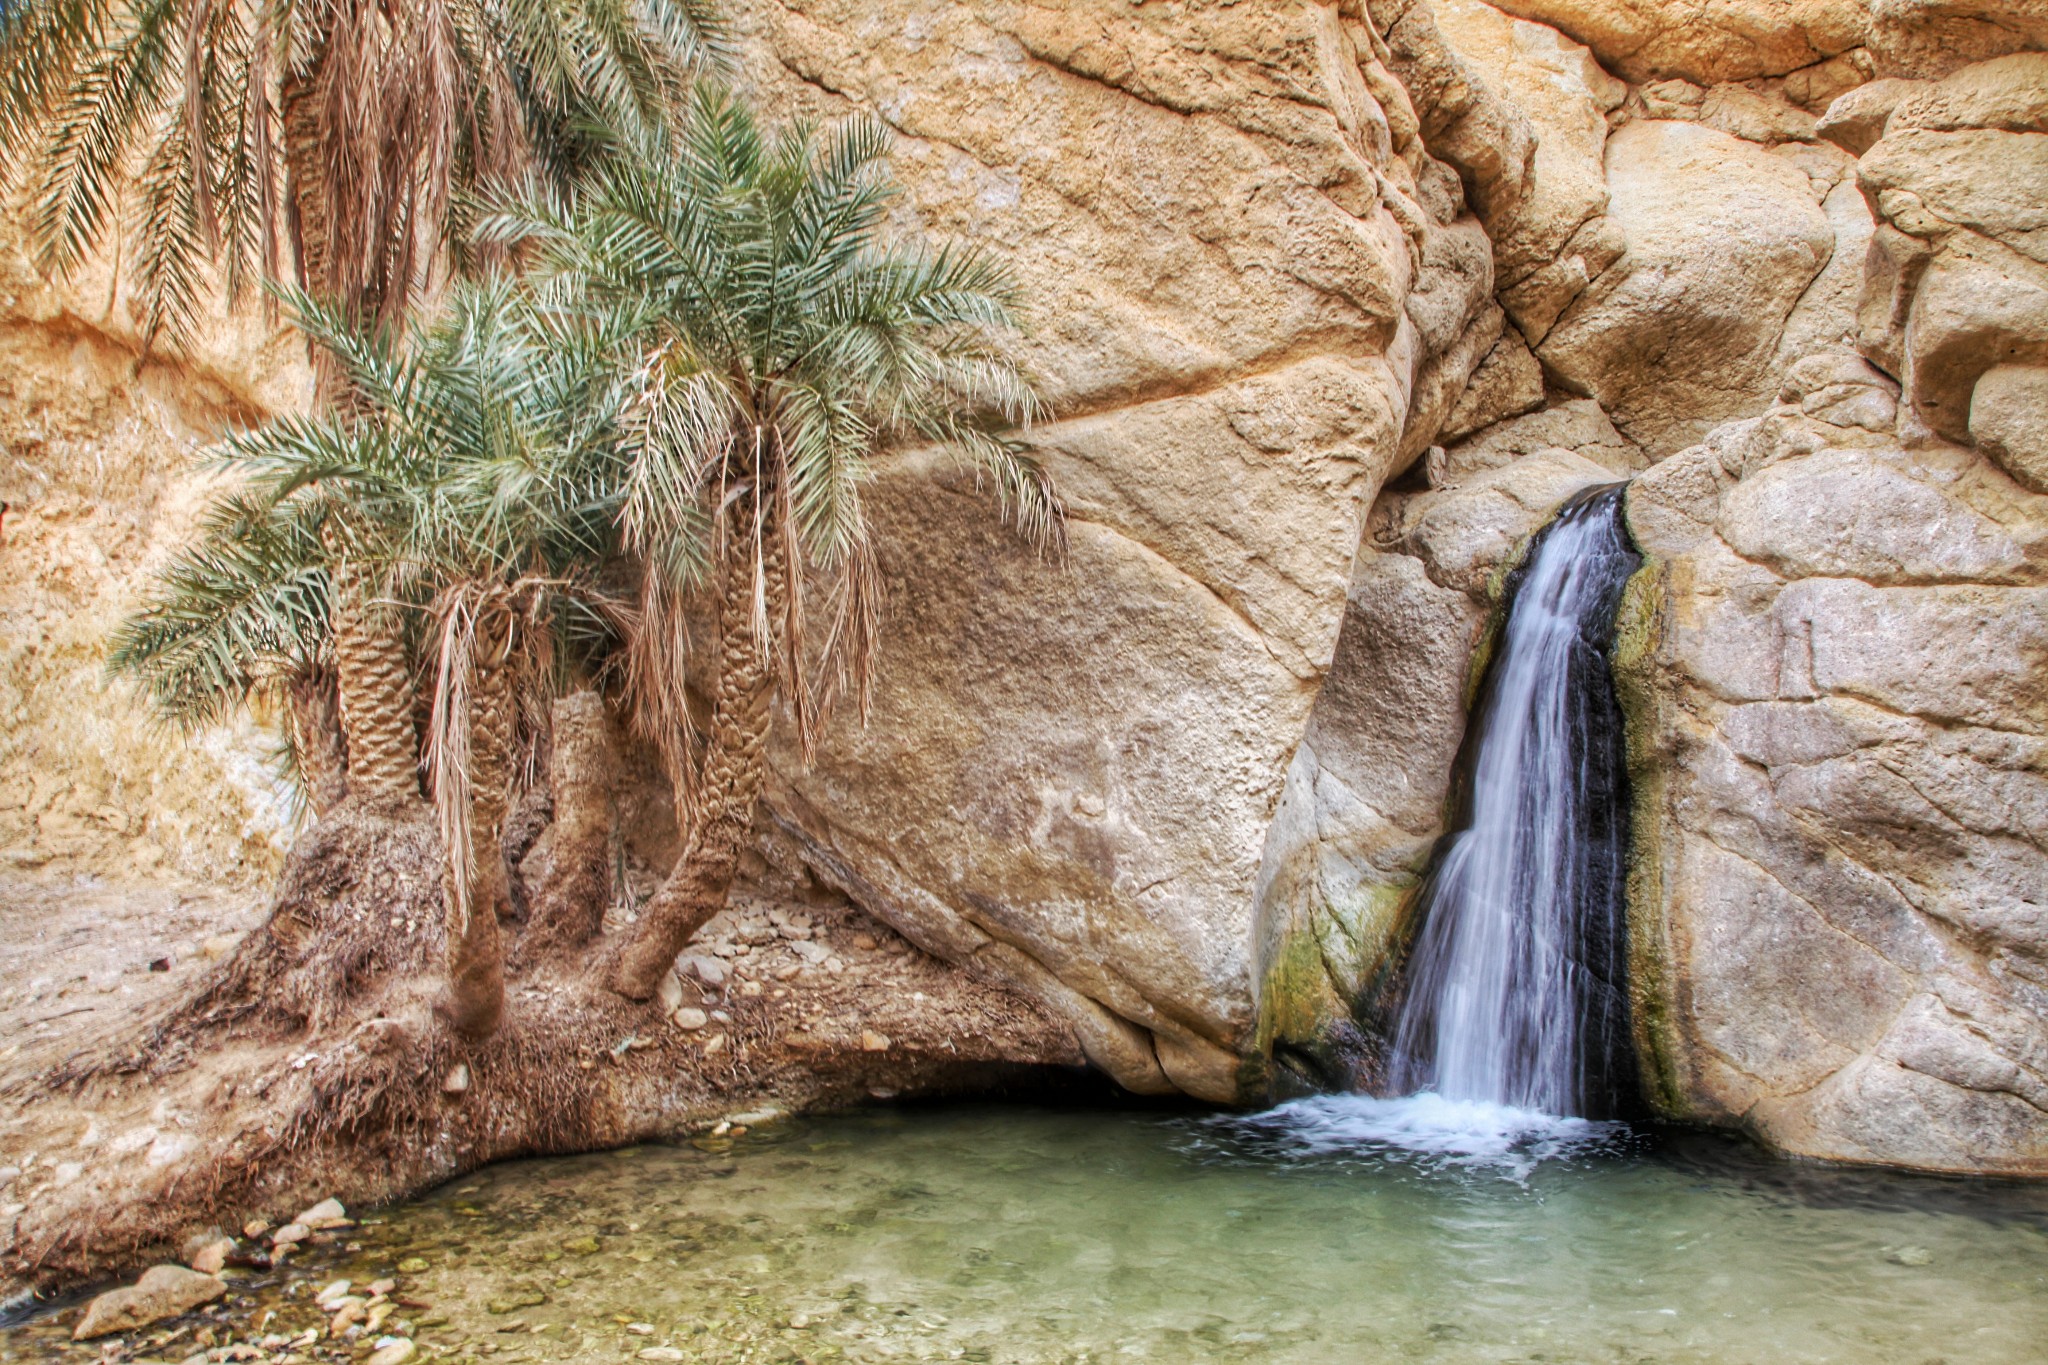 突尼西亚碧卡山绿洲 库存图片. 图片 包括有 小山, 绿洲, 东部, 风景, 撒哈拉大沙漠, 中间, 峡谷 - 237722889